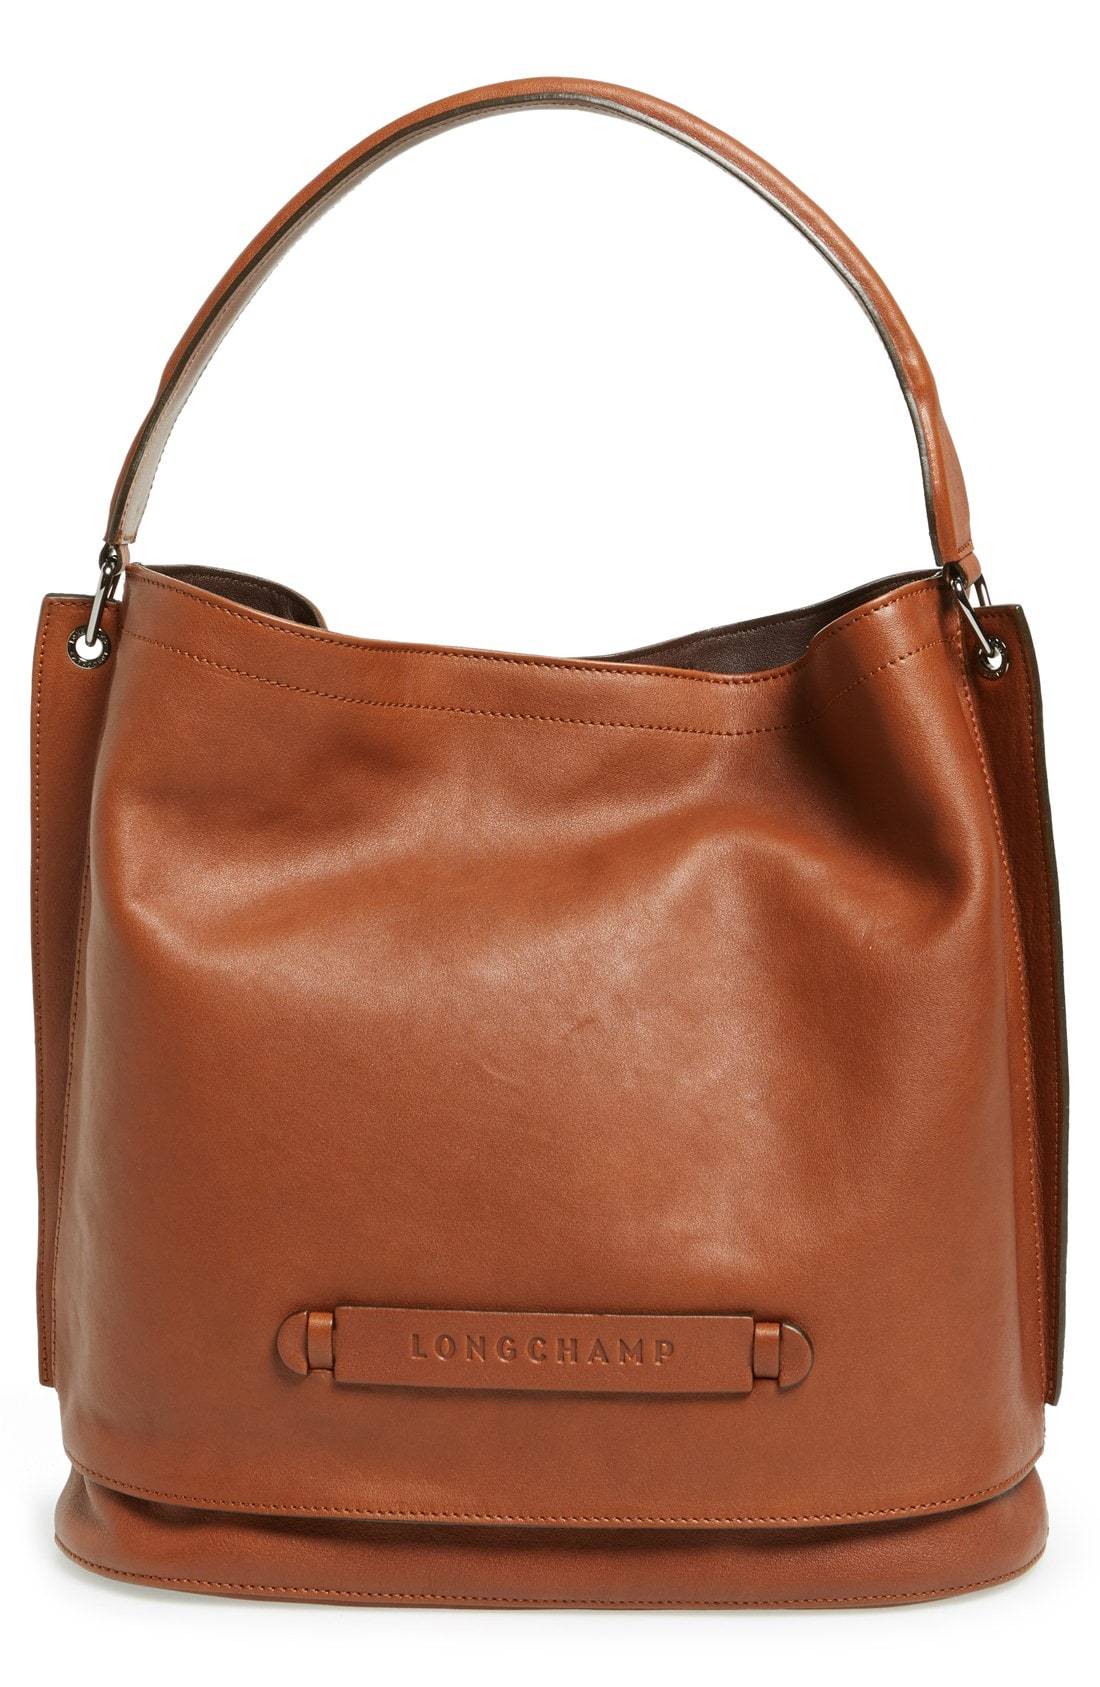 Longchamp 3d Leather Hobo, $780, Nordstrom